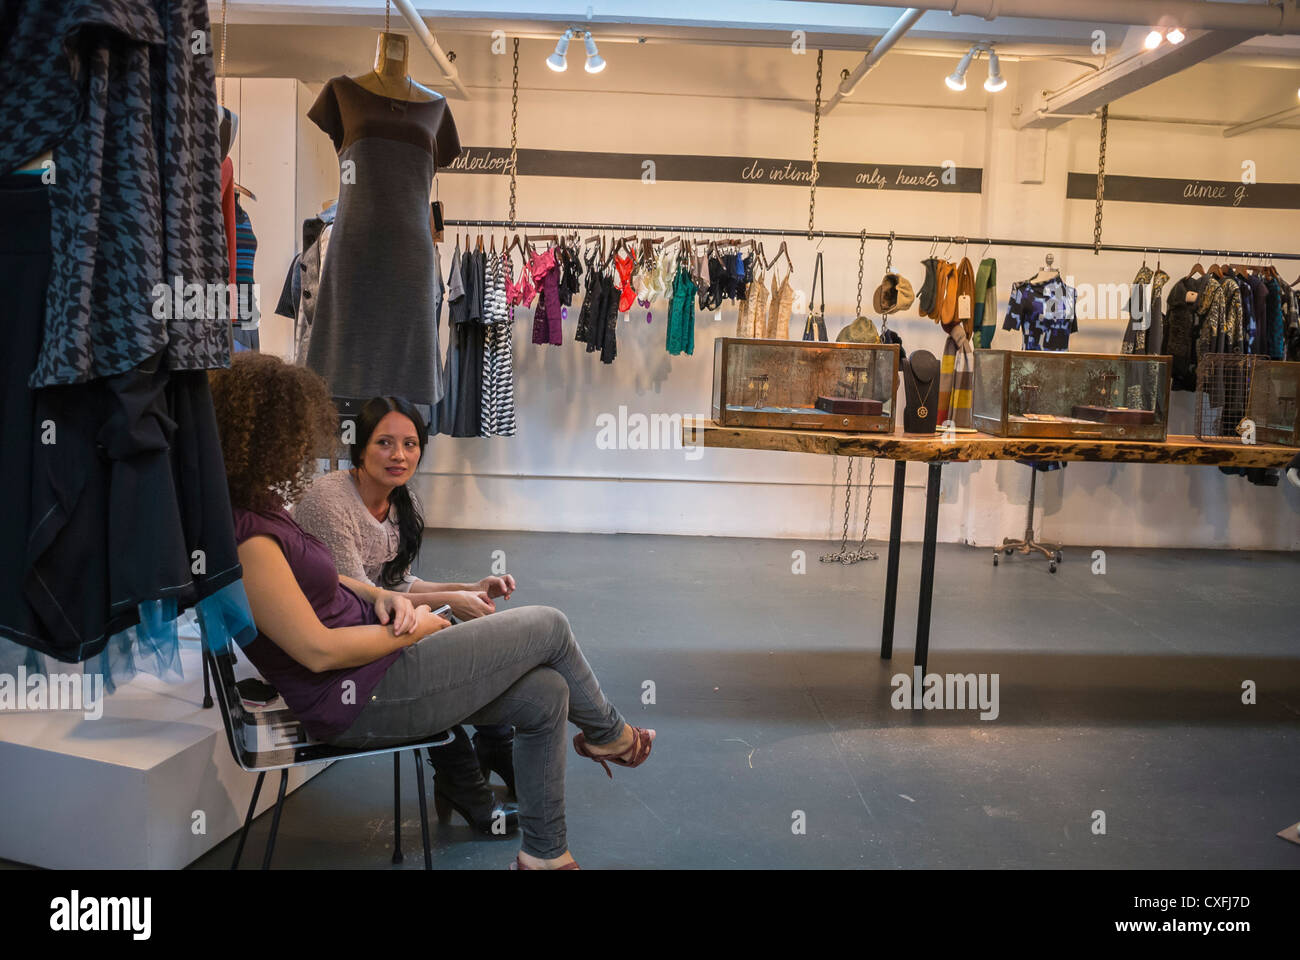 La Ciudad de Nueva York, NY, EE.UU., mujeres dentro de DUMBO, tienda de ropa de mujeres locales, 'tronco', Brooklyn, gentrificación de las zonas de la ciudad EE.UU Fotografía de stock